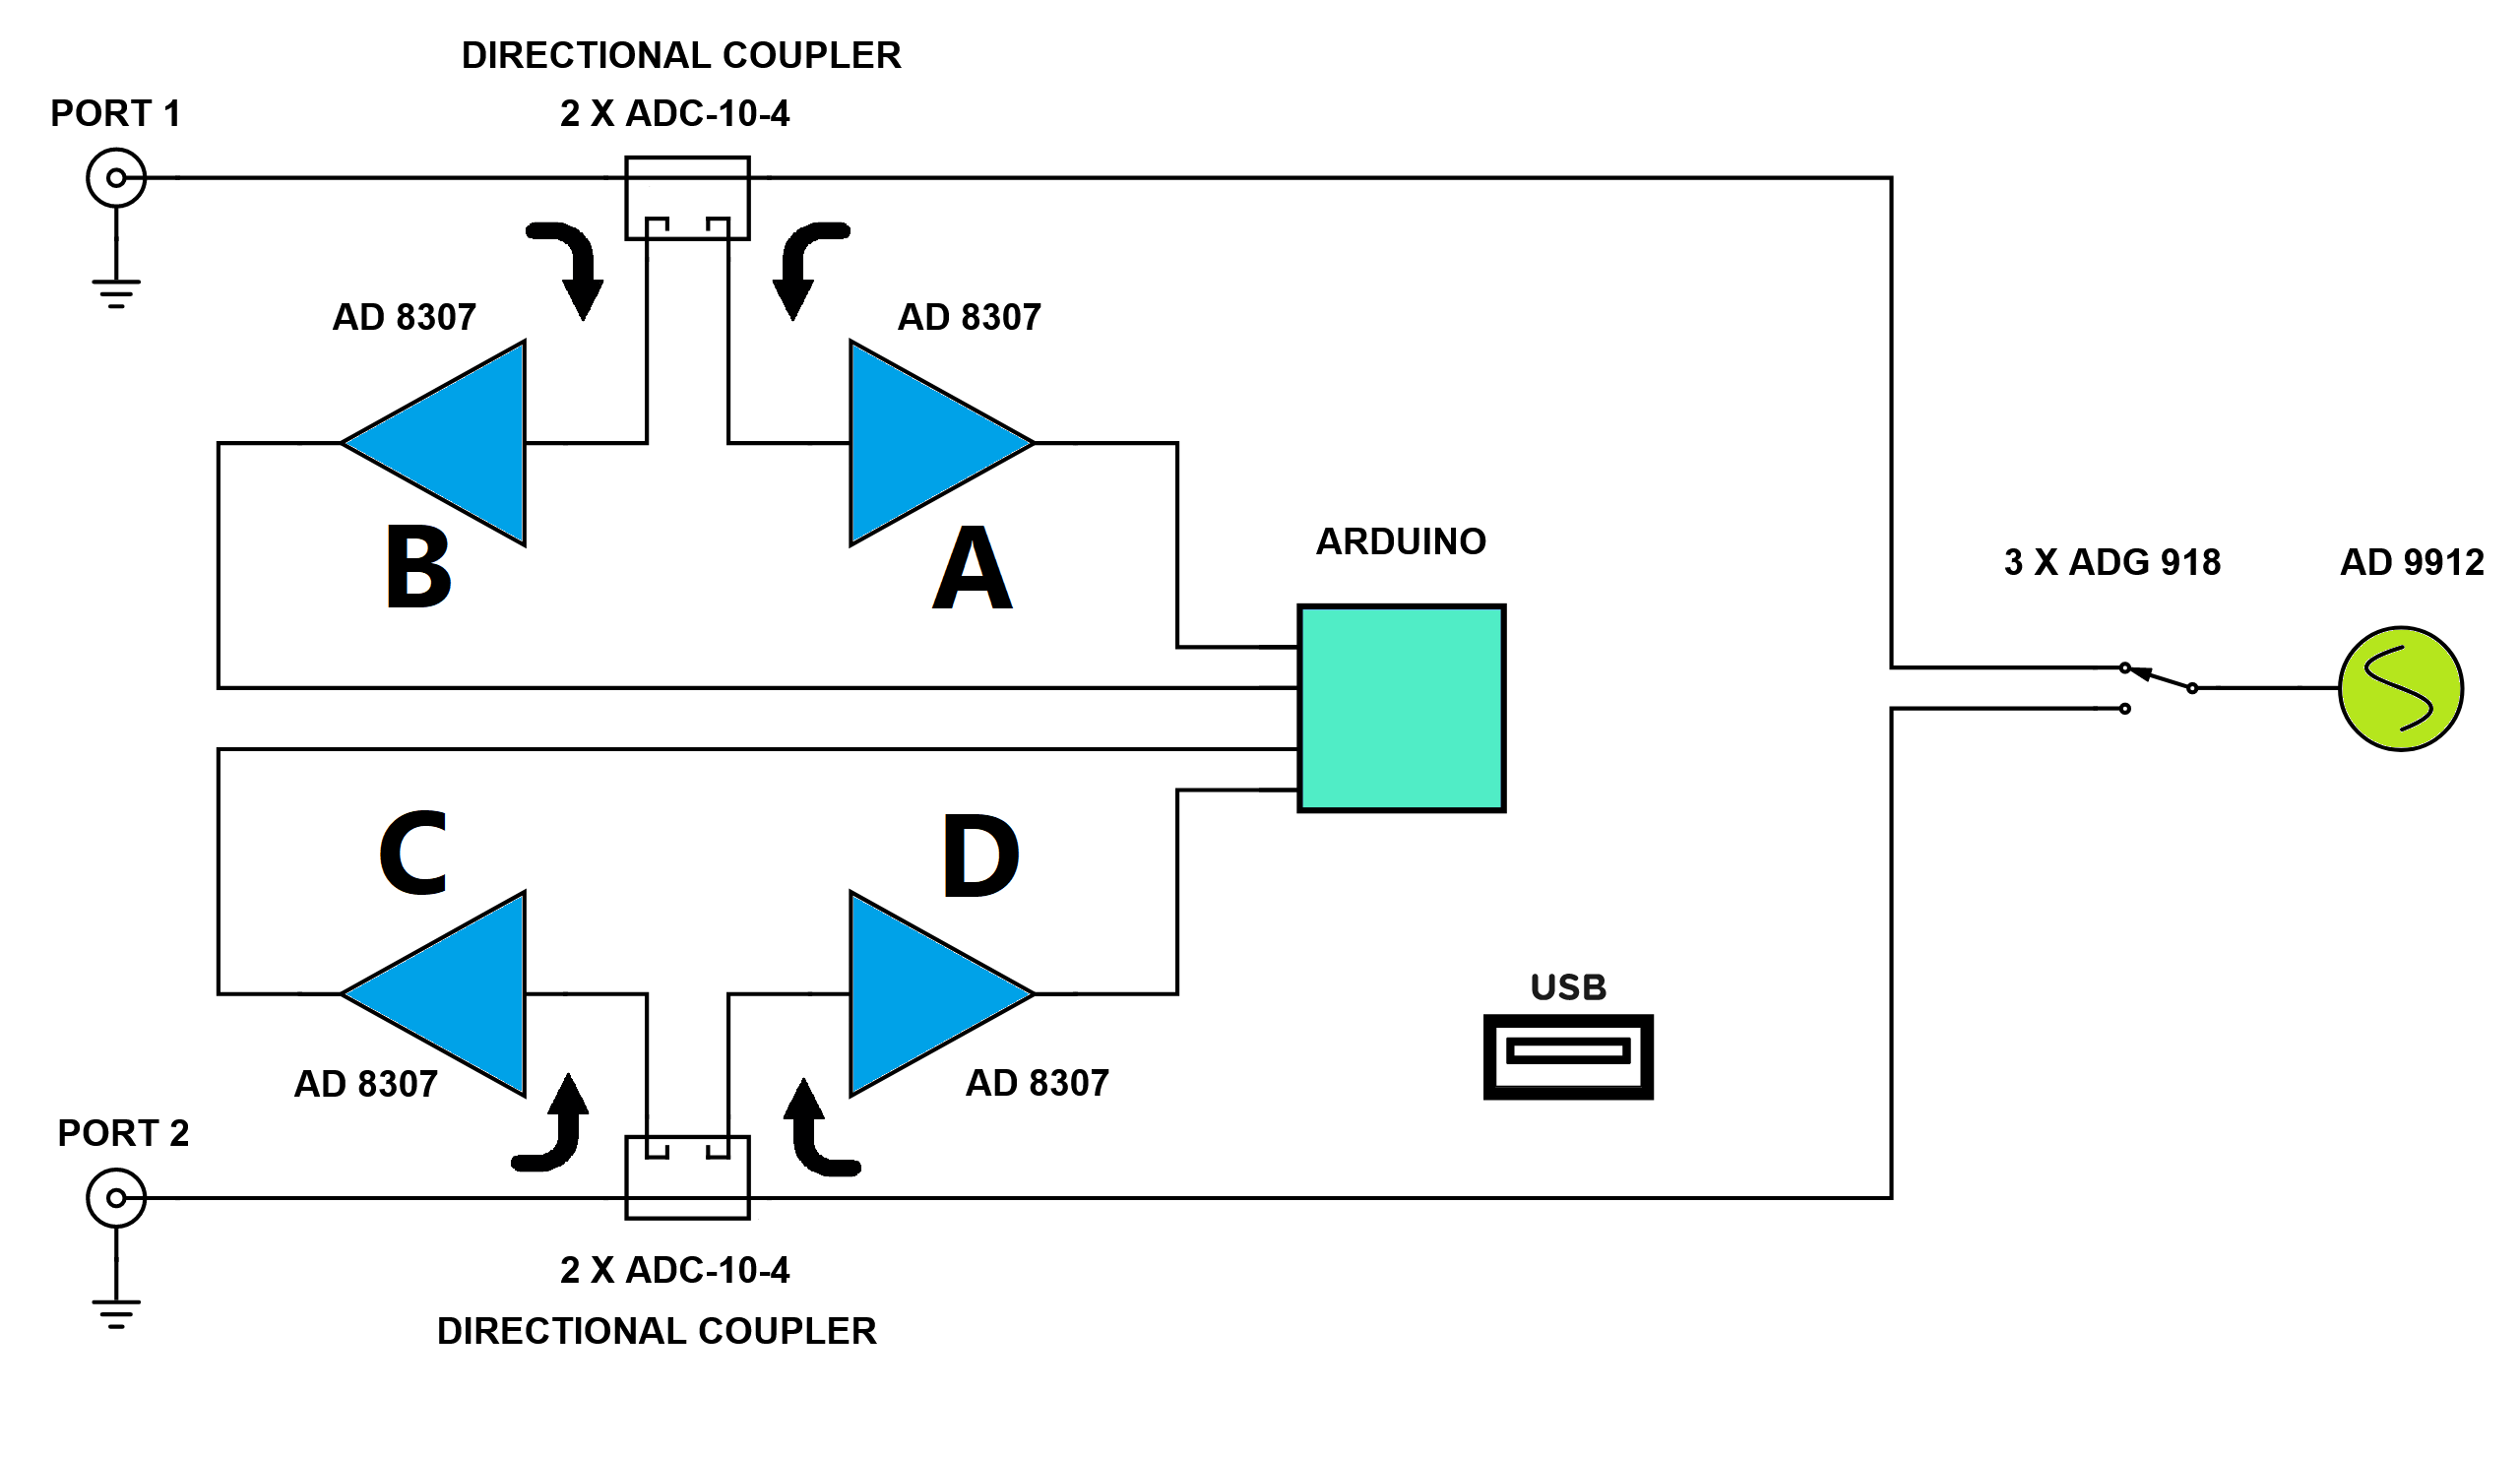 Arduino RF Scalar Network Analyzer 'Tobimod'